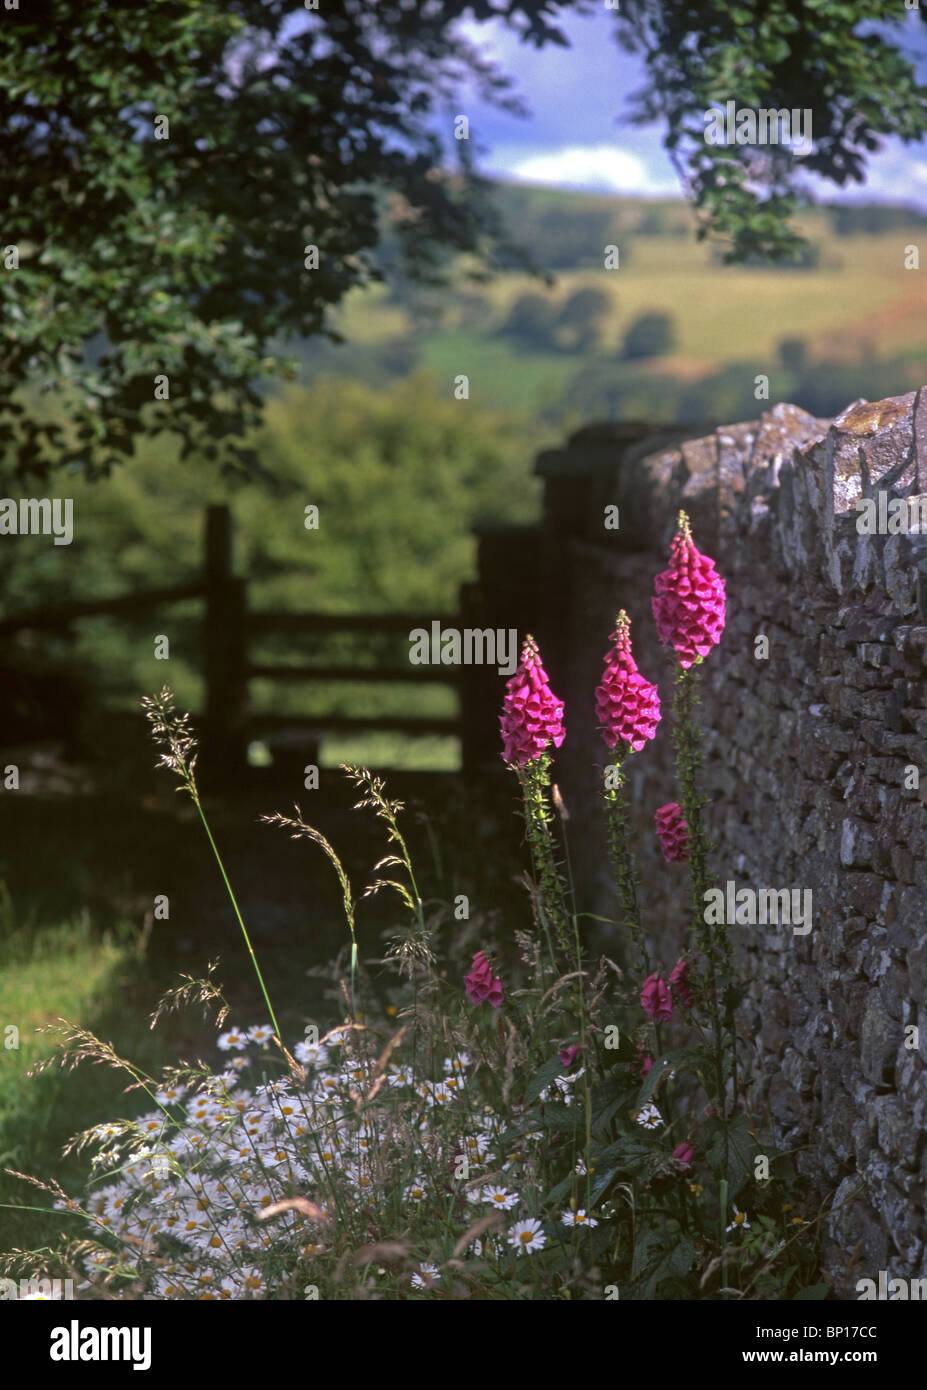 Digitales et stile / gate à St Illtyd's churchyard, Brynithel, près de Llanhilleth, Blaenau Gwent, vallées, dans le sud du Pays de Galles, Royaume-Uni Banque D'Images